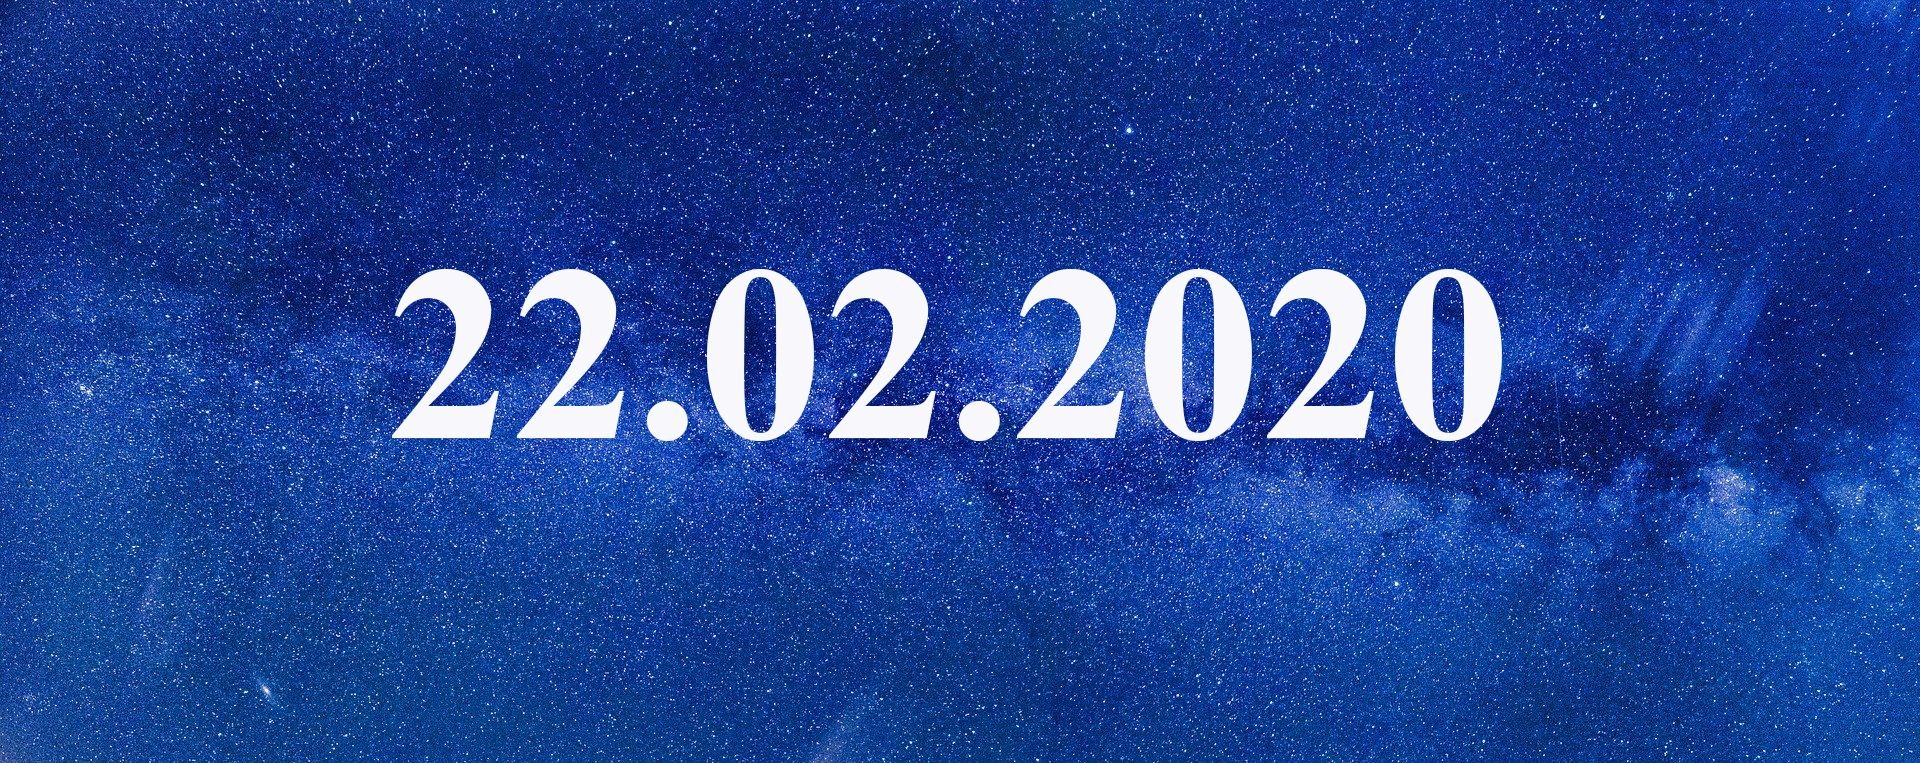 10 апреля 2020 день. Зеркальная Дата 22.02.2022. Дата 22.02.2022. Дата красивыми цифрами. 02.02.2022 Мистическая Дата.